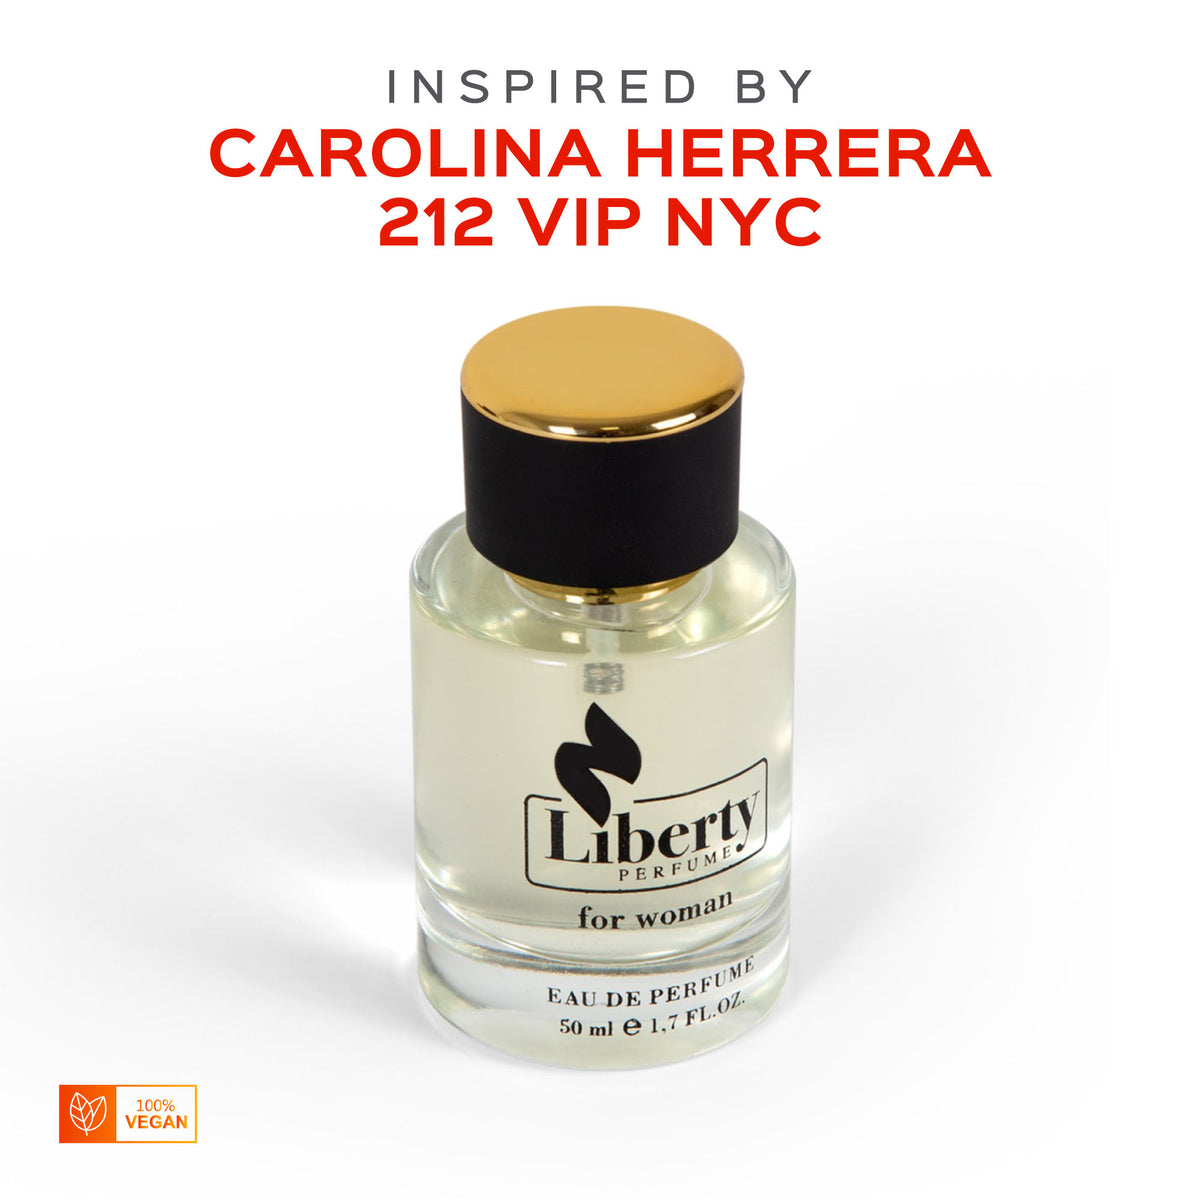 W18 for Women Perfume Inspired Liberty - Herrera – Carolina by $39.99 Vip 212